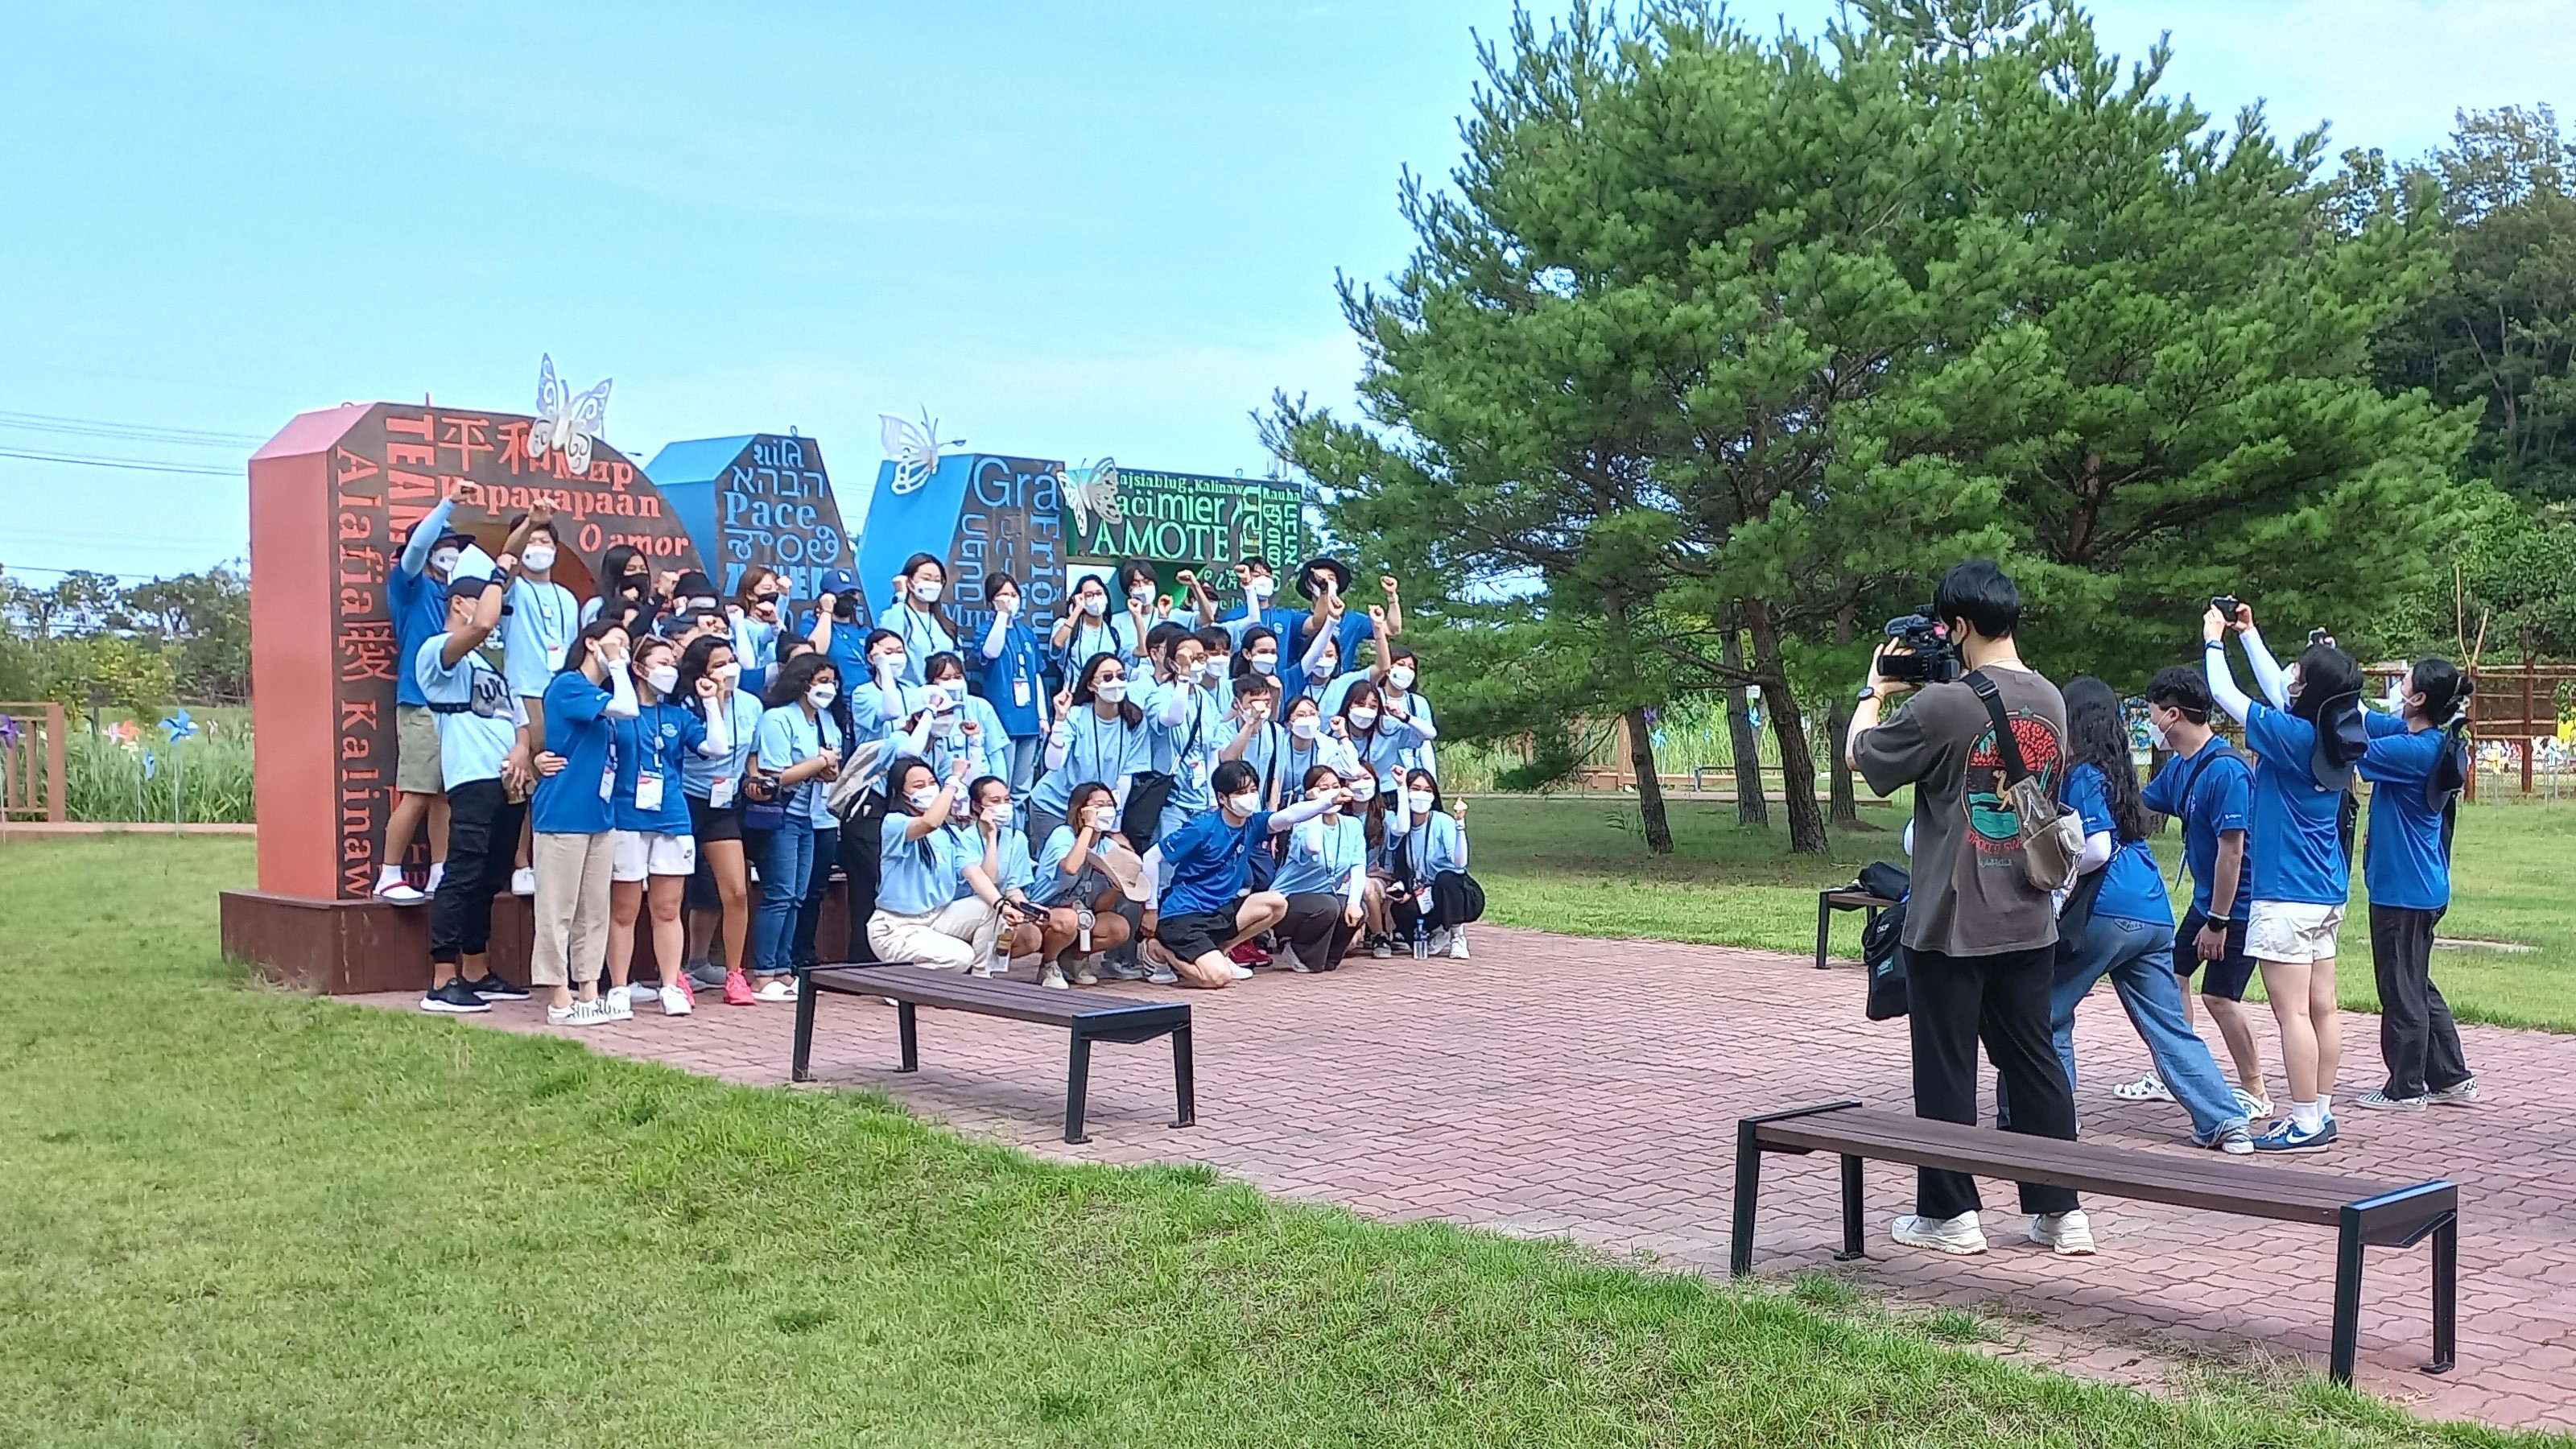 Участники команды из Пхенчхана делают памятное фото в музее DMZ